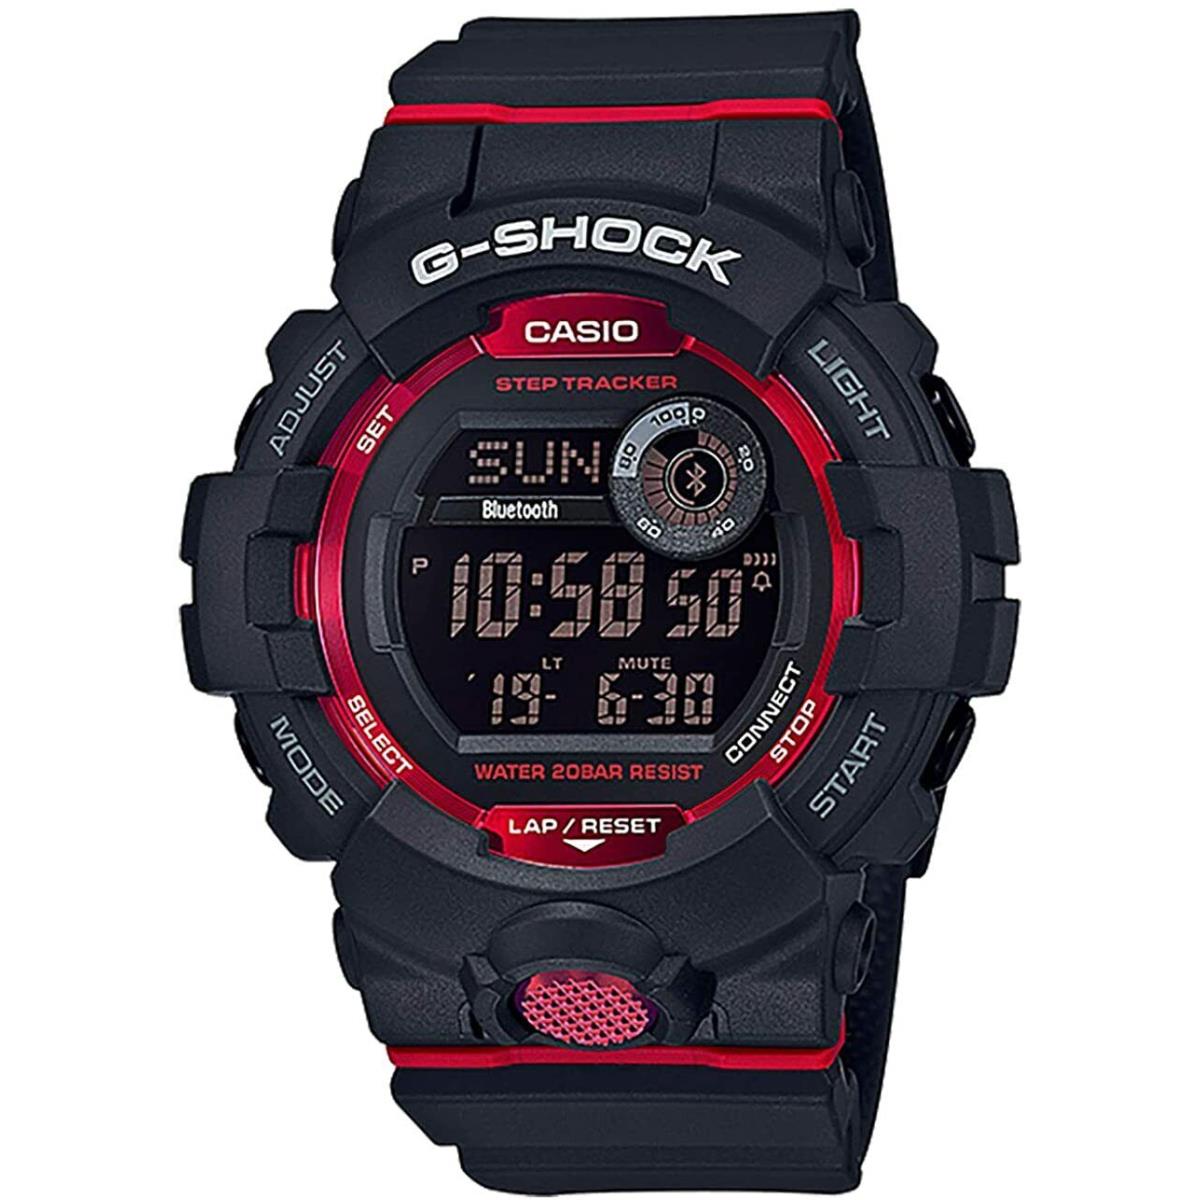 Casio G-shock Digital Bluetooth Watch Black / Red Resin GBD-800-1 / GBD800-1